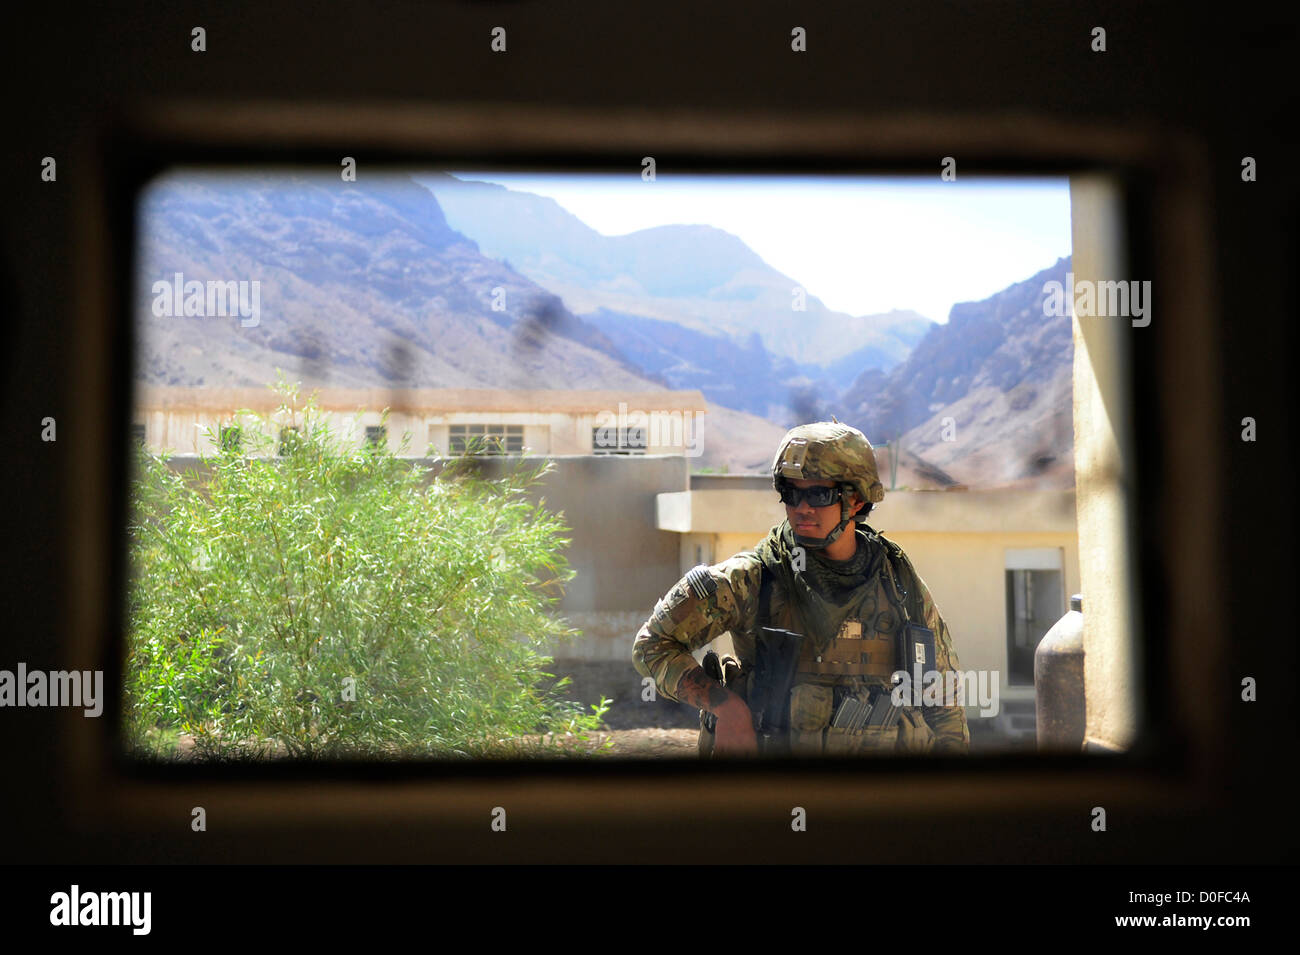 U.S. Navy Corpsman bewachen eine Verbindung gesehen durch das Fenster eines gepanzerten Fahrzeuges 26. September 2012 während einer Mission Pur Chaman District, Provinz Farah, Afghanistan. Die Mission ist die erste Zeit-Koalition, die Kräfte zum Bezirk Pur Chaman in mehr als einem Jahr gewesen. Stockfoto